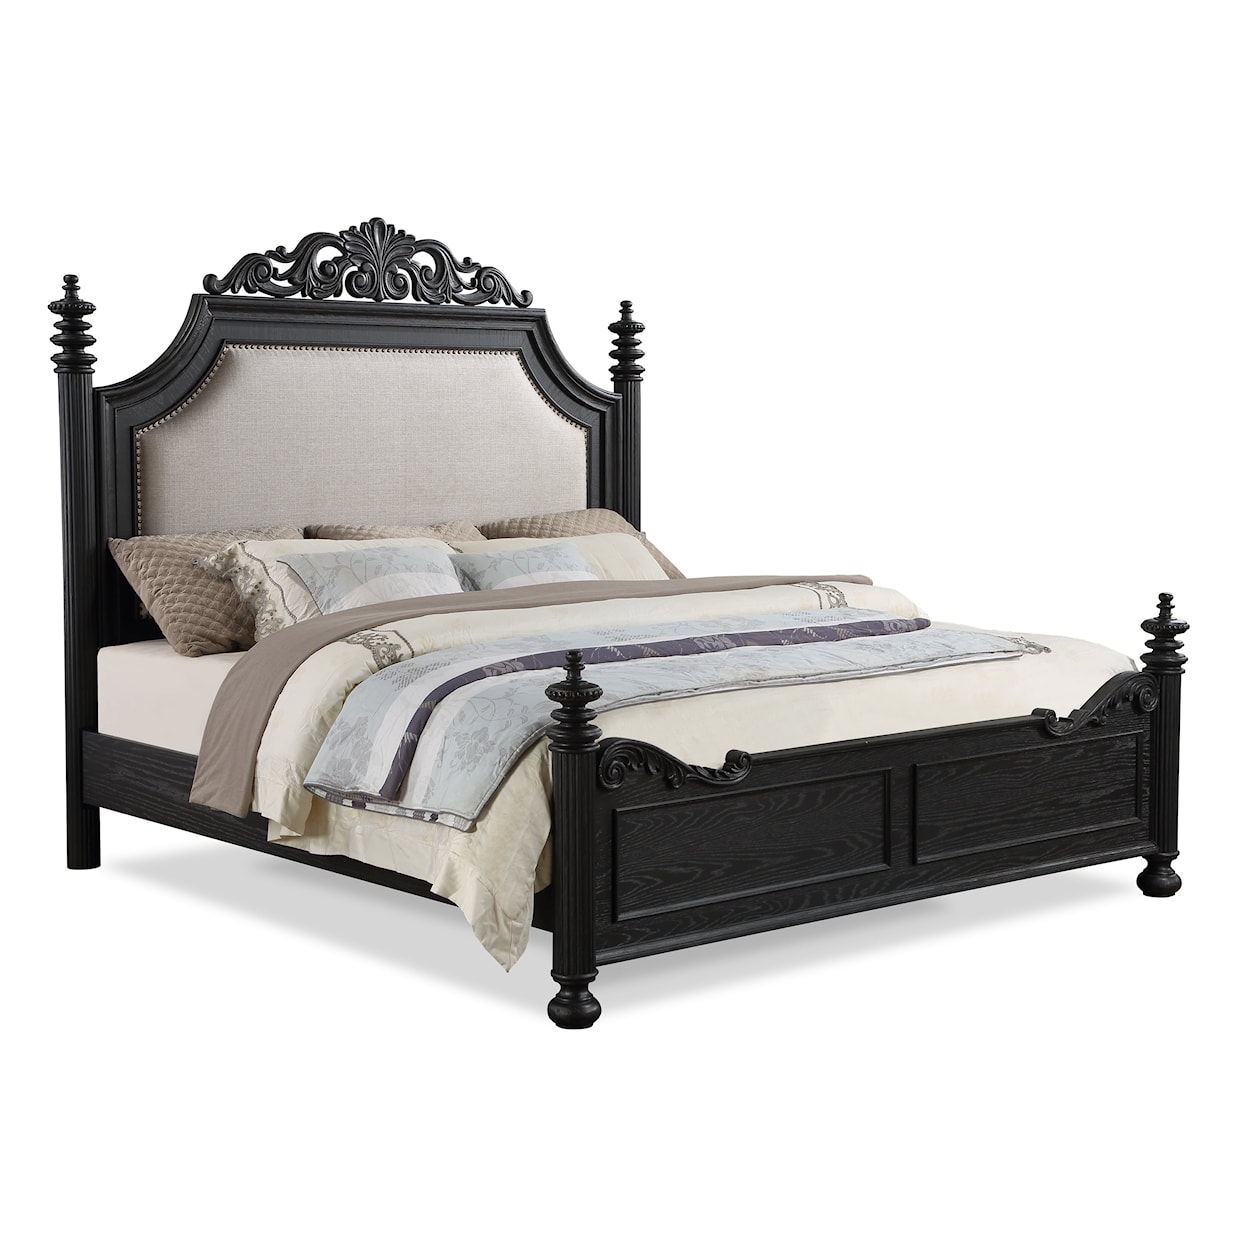 CM KINGSBURY Queen Upholstered Bed